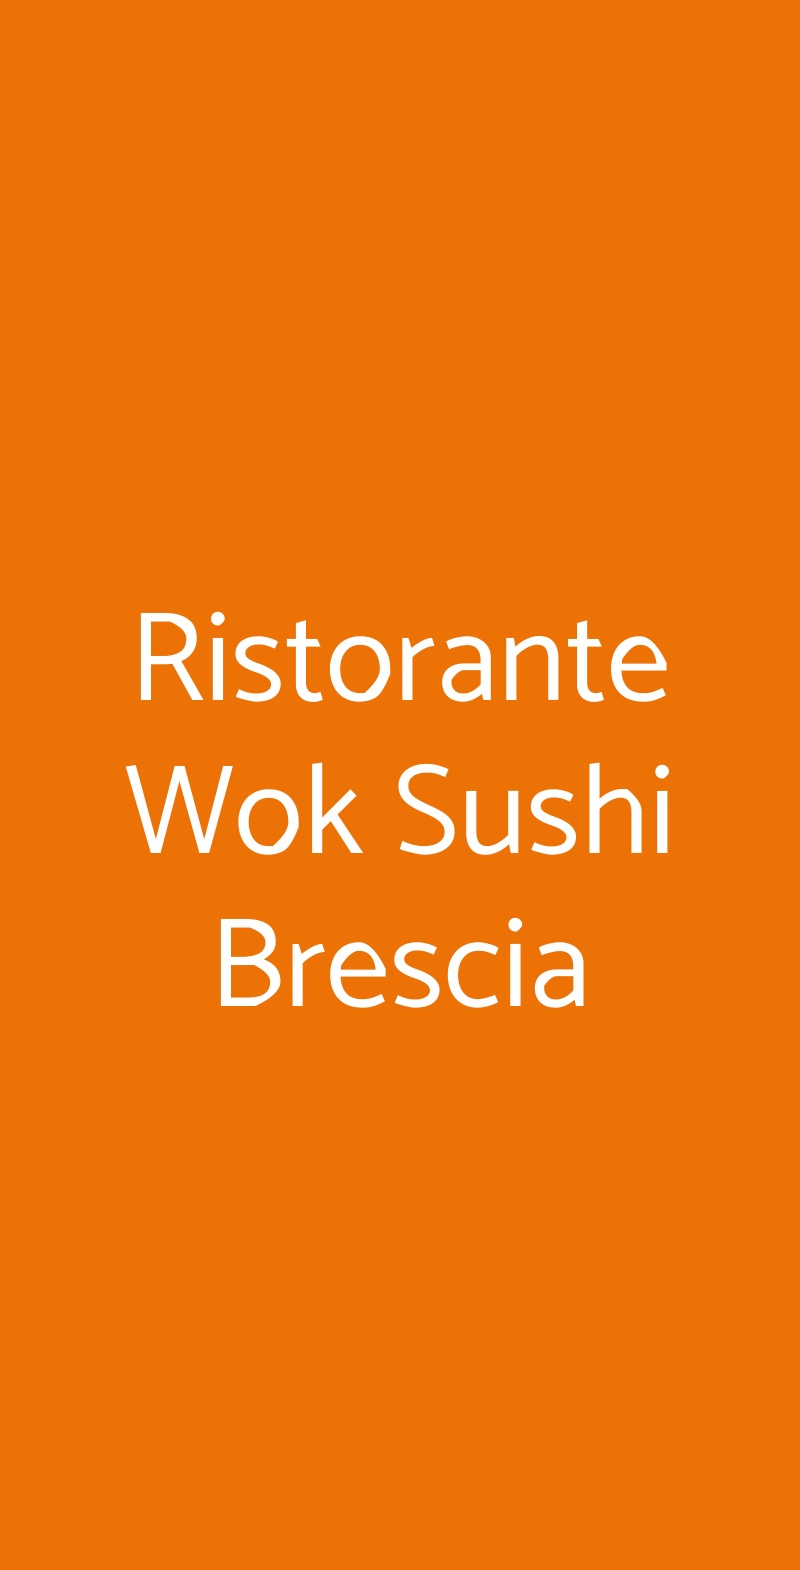 Ristorante Wok Sushi Brescia Brescia menù 1 pagina